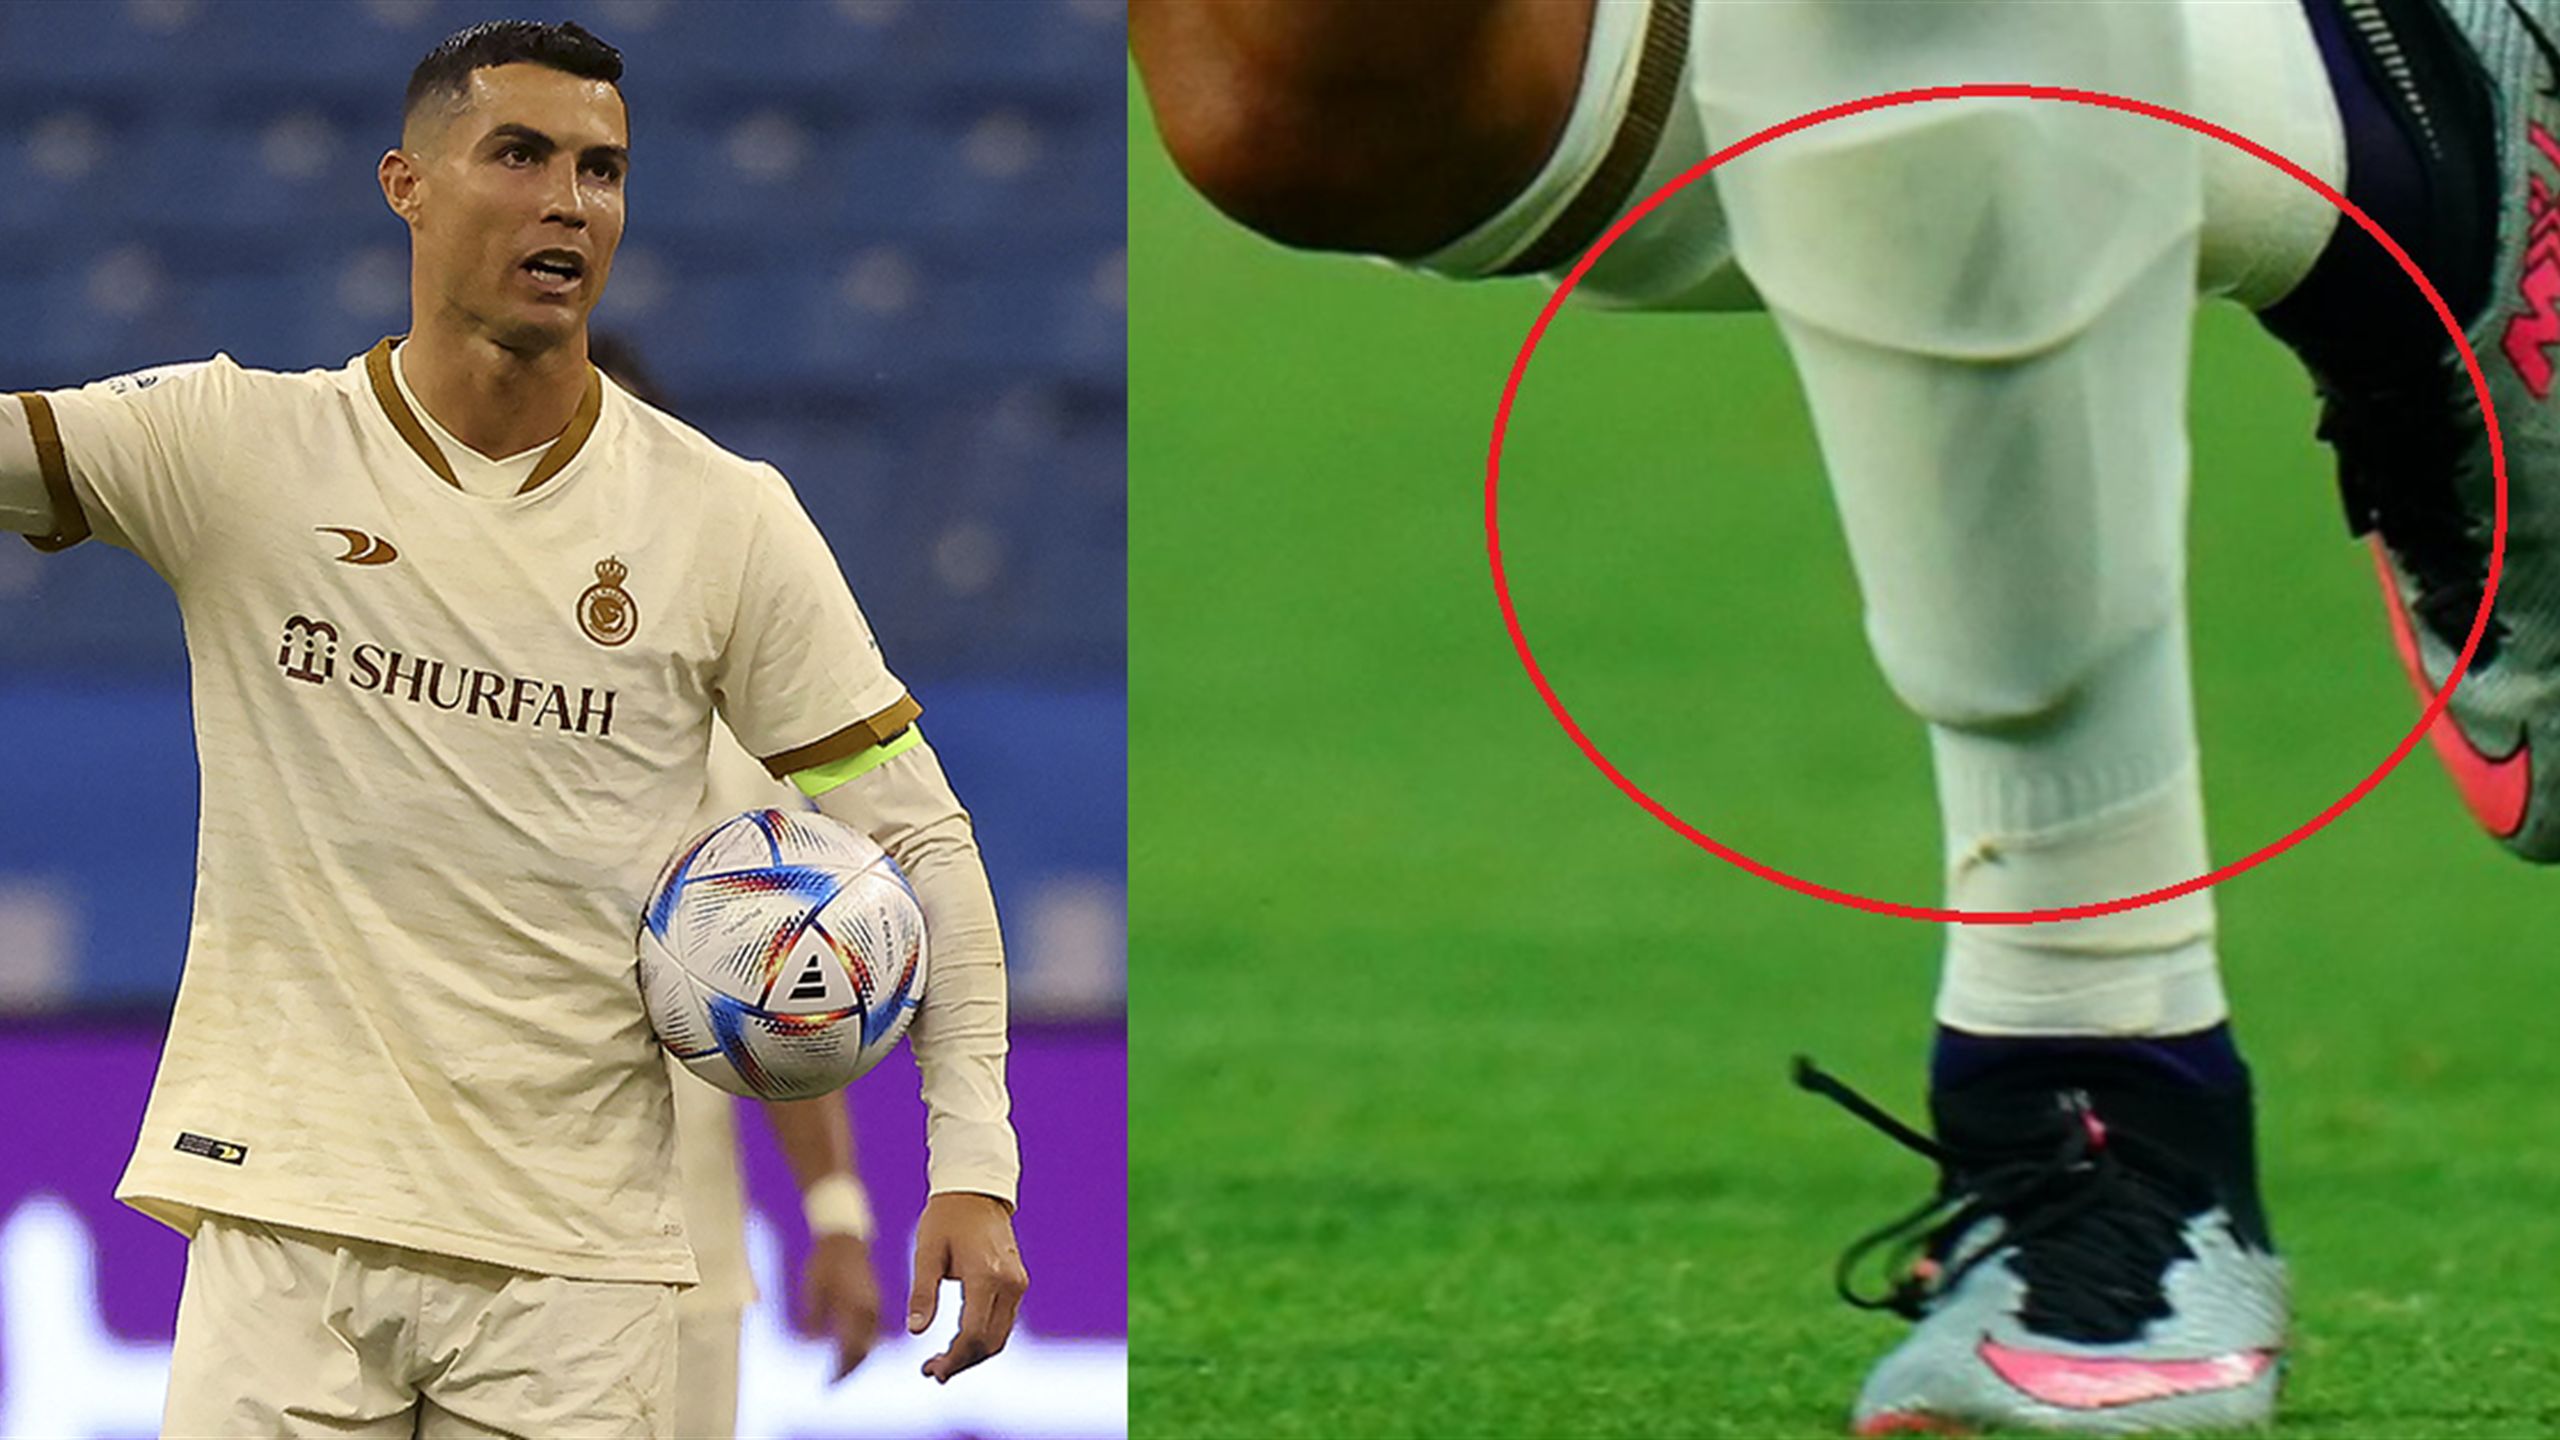 Ronaldo e il giallo del parastinco che ha fatto infuriare la Nike